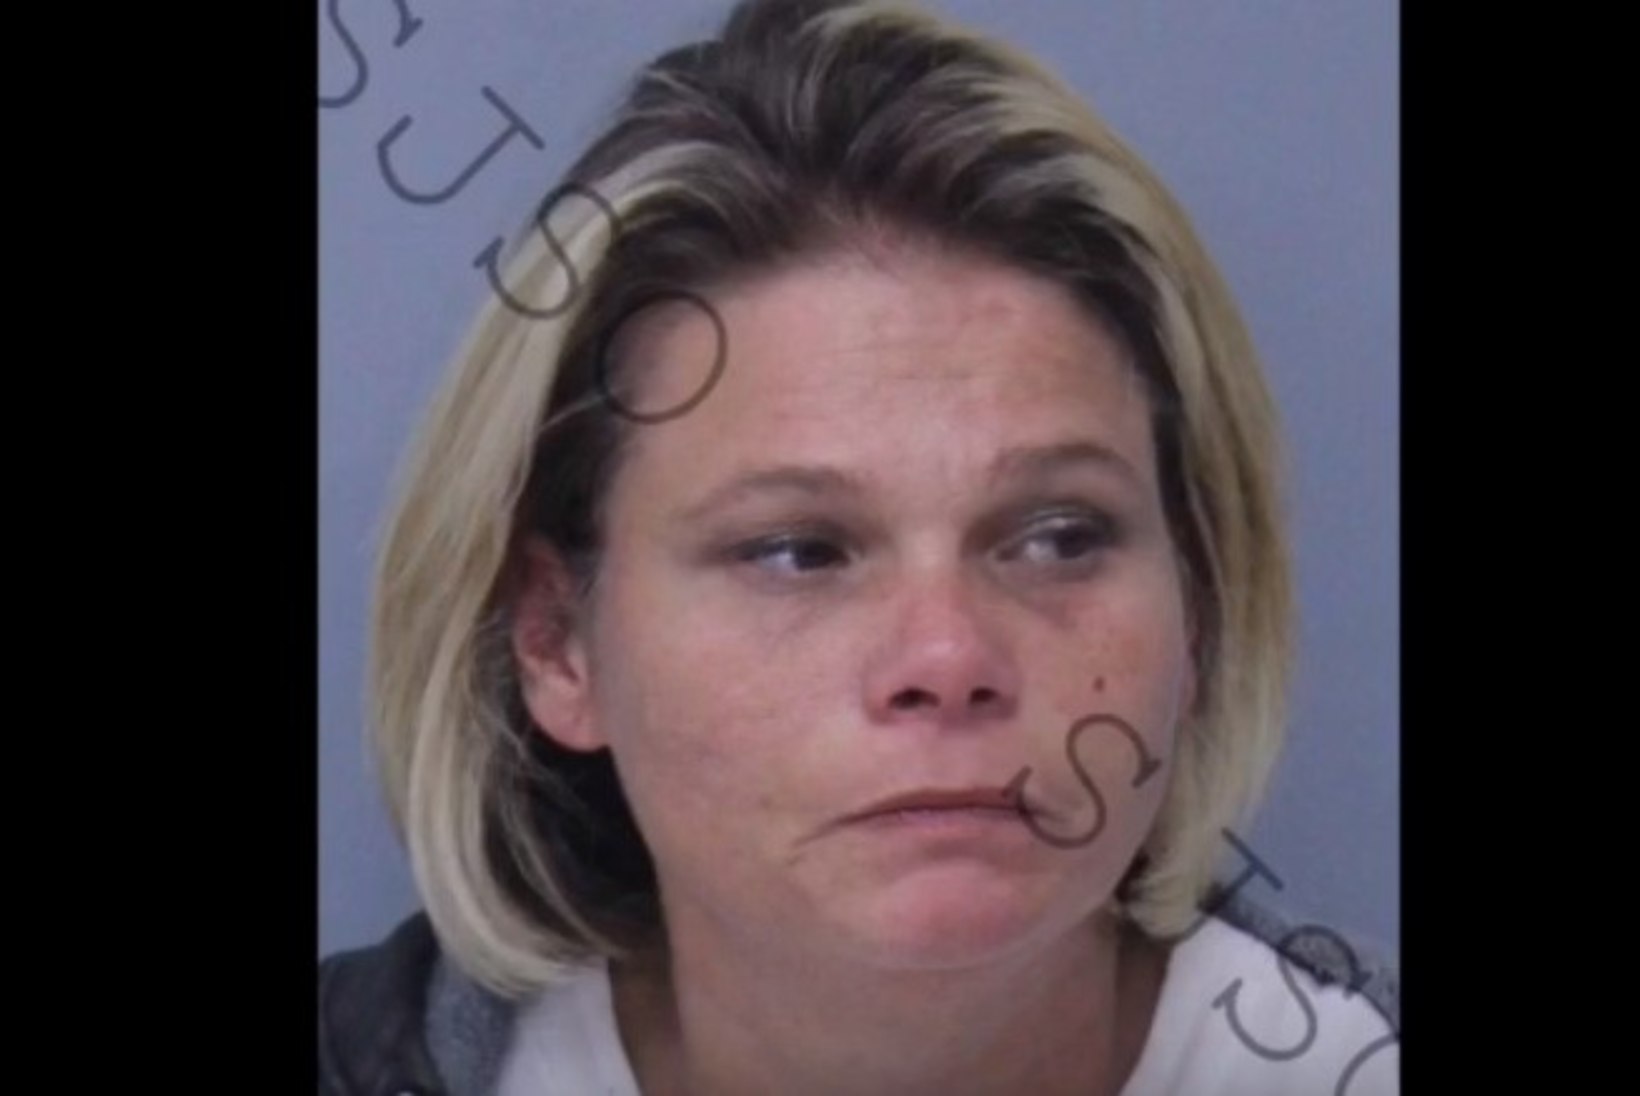 SAATUSE IROONIA: Floridas vahistati metamfetamiini tarvitanud naine nimega Crystal Methvin